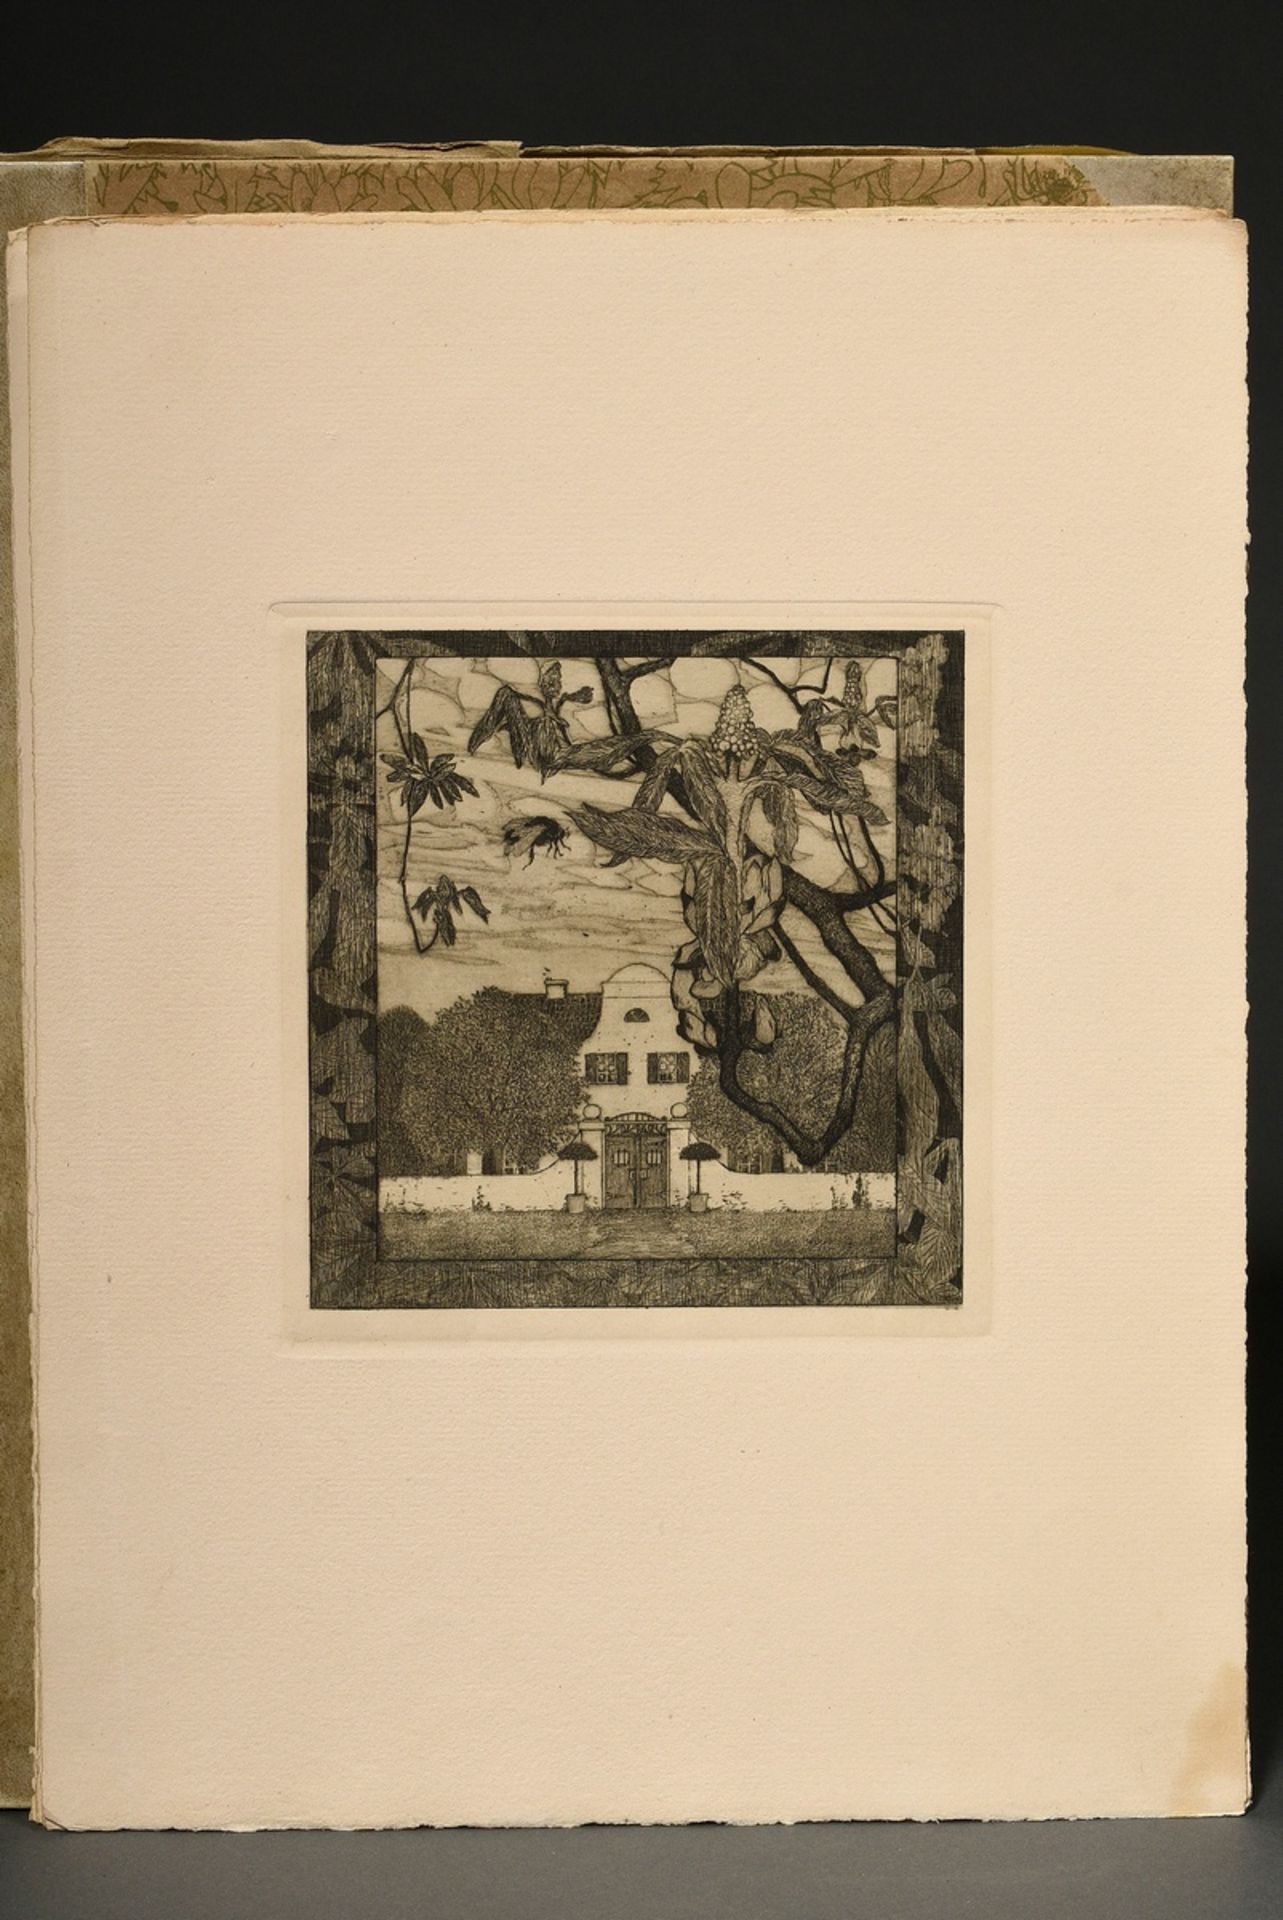 Vogeler, Heinrich (1872-1942) "An den Frühling" 1899/1901, portfolio with 10 etchings and prelimina - Image 14 of 25